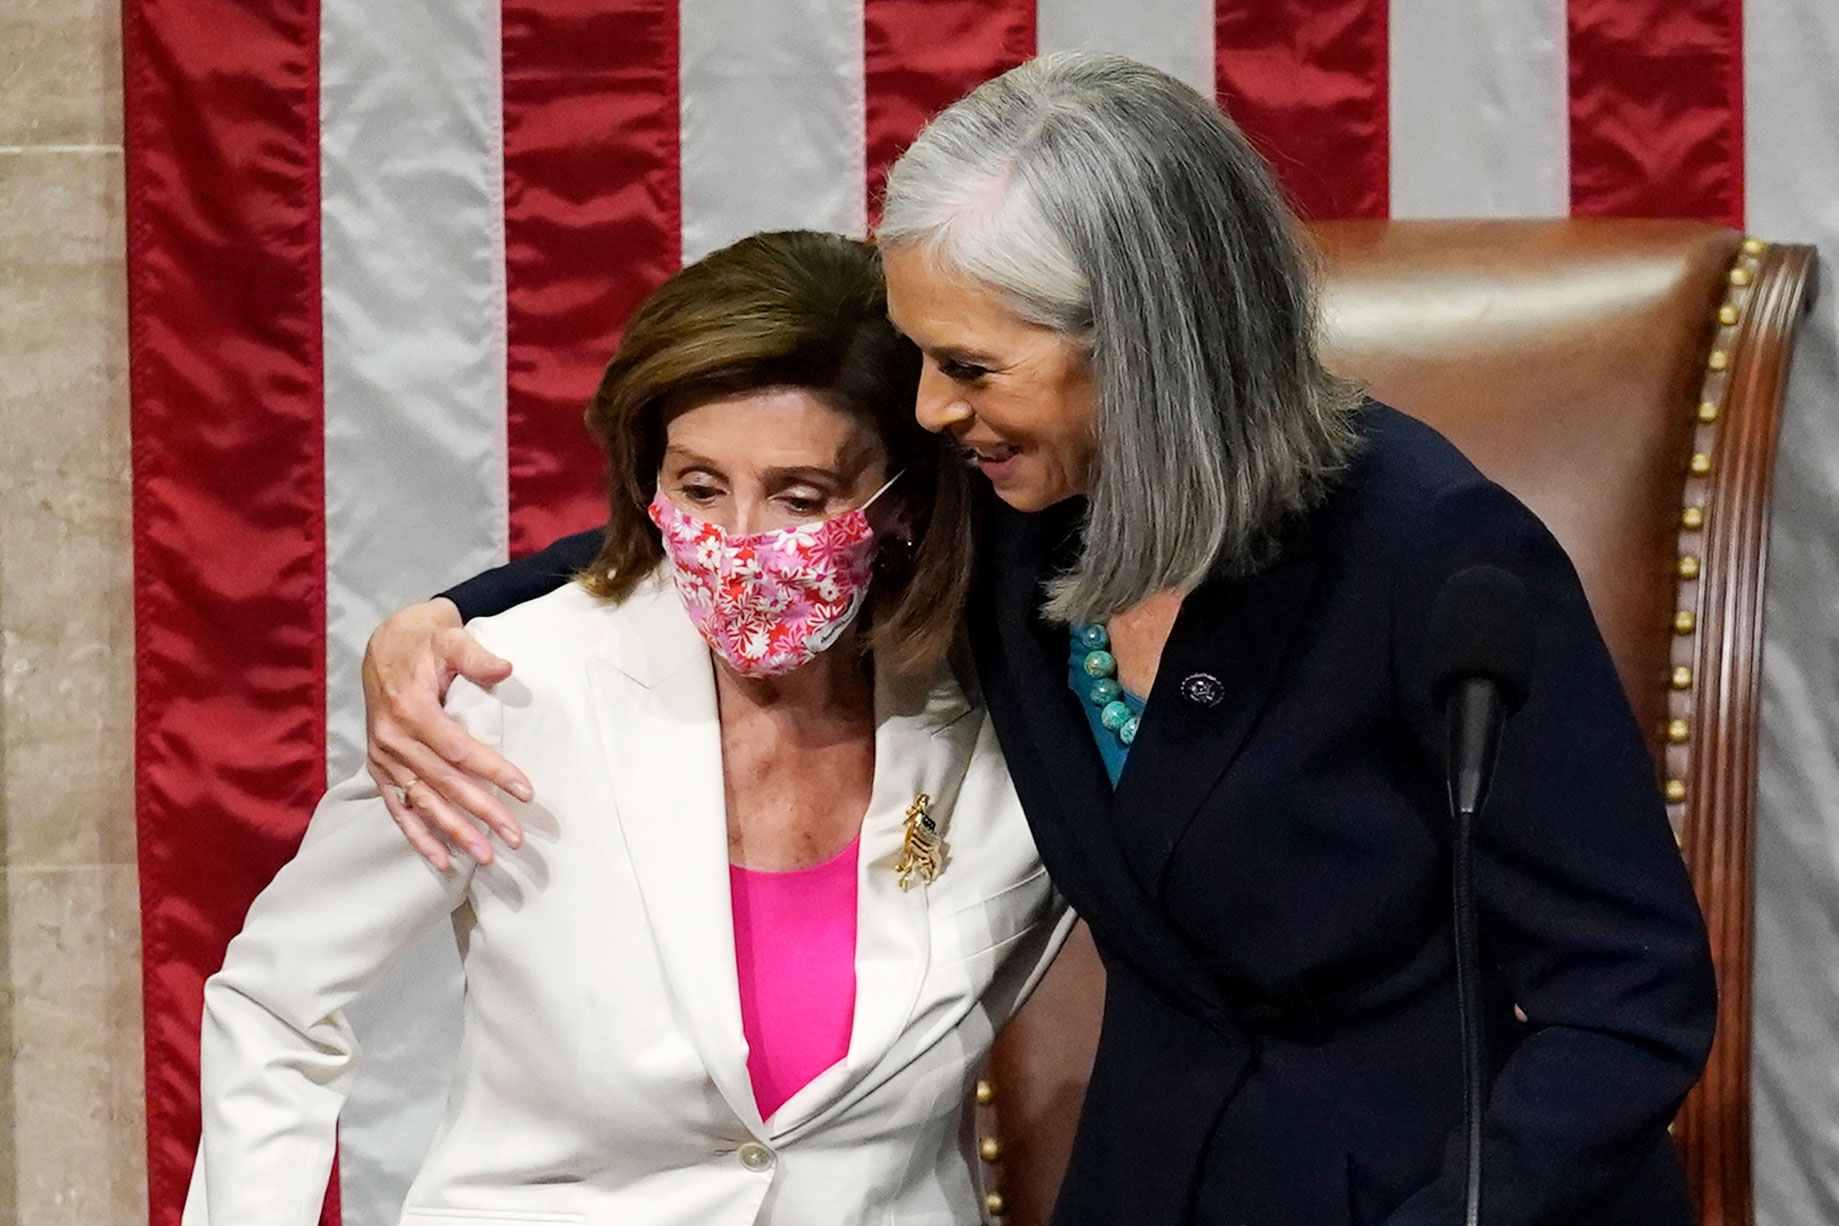 Rep. Katherine Clark, right, hugs House Speaker Nancy Pelosi after the House passage of President Joe Biden's spending bill at the Capitol on November 19.